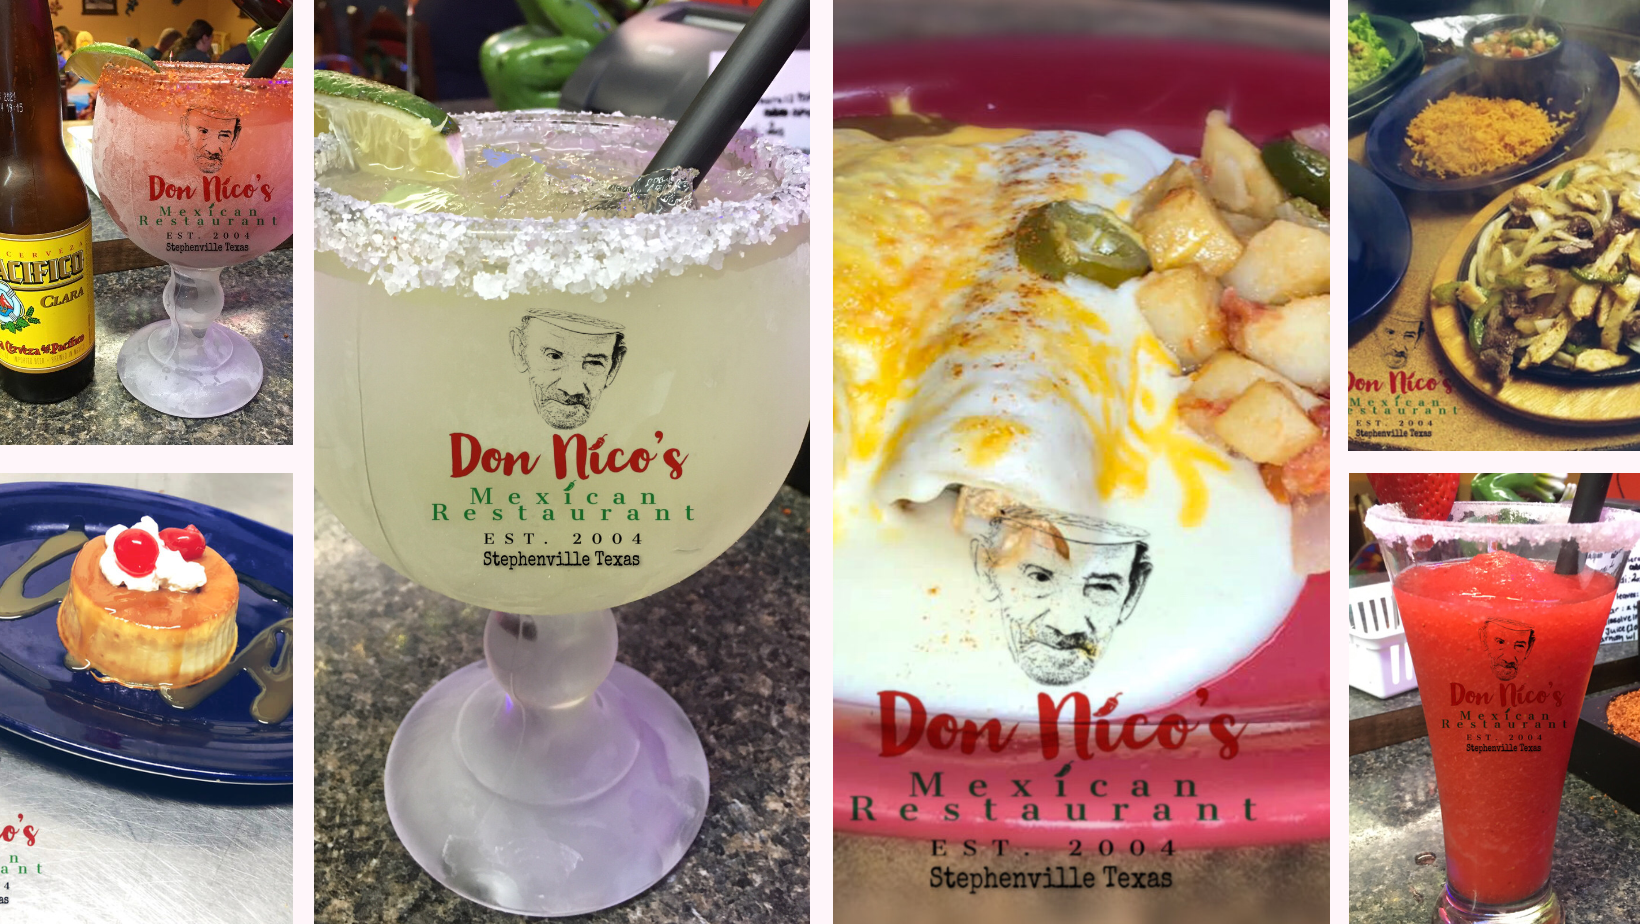 Don Nicos Mexican Restaurant